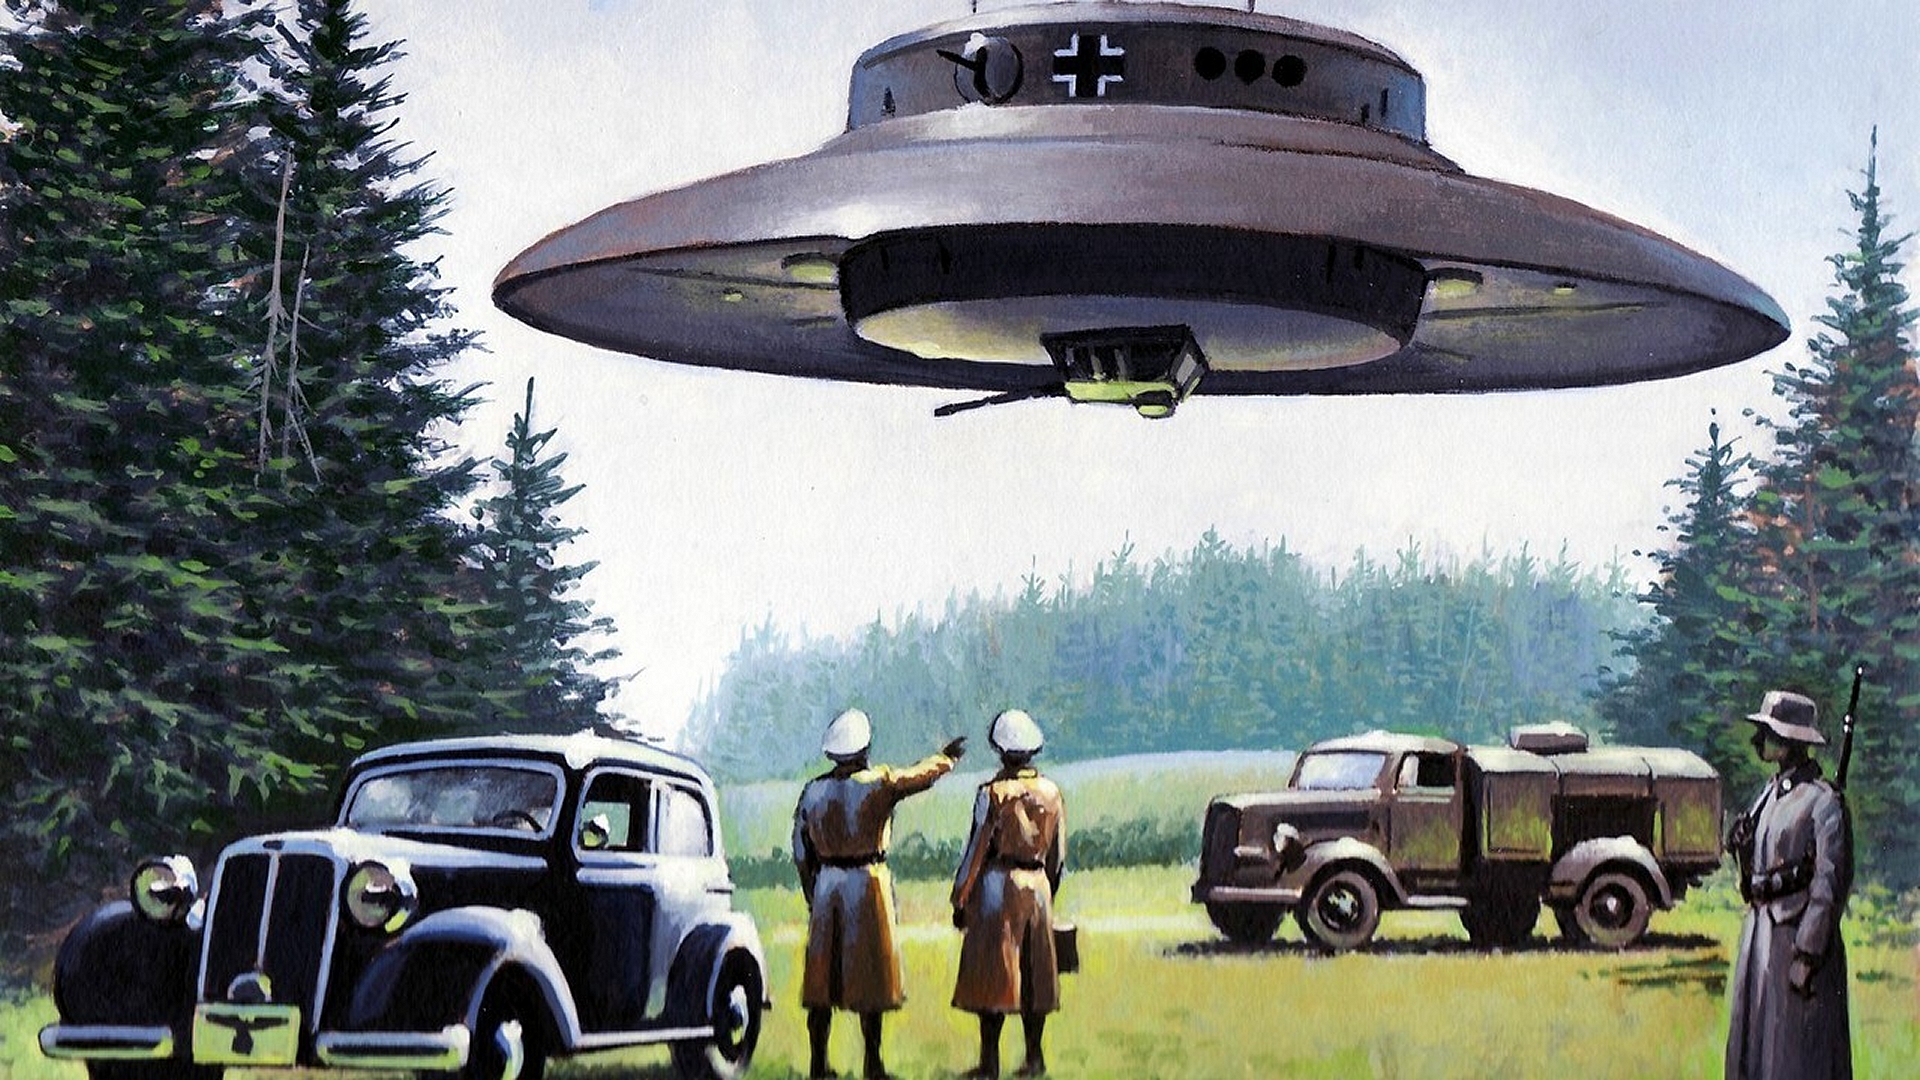 UFO Nazi Futuristic 1920x1080